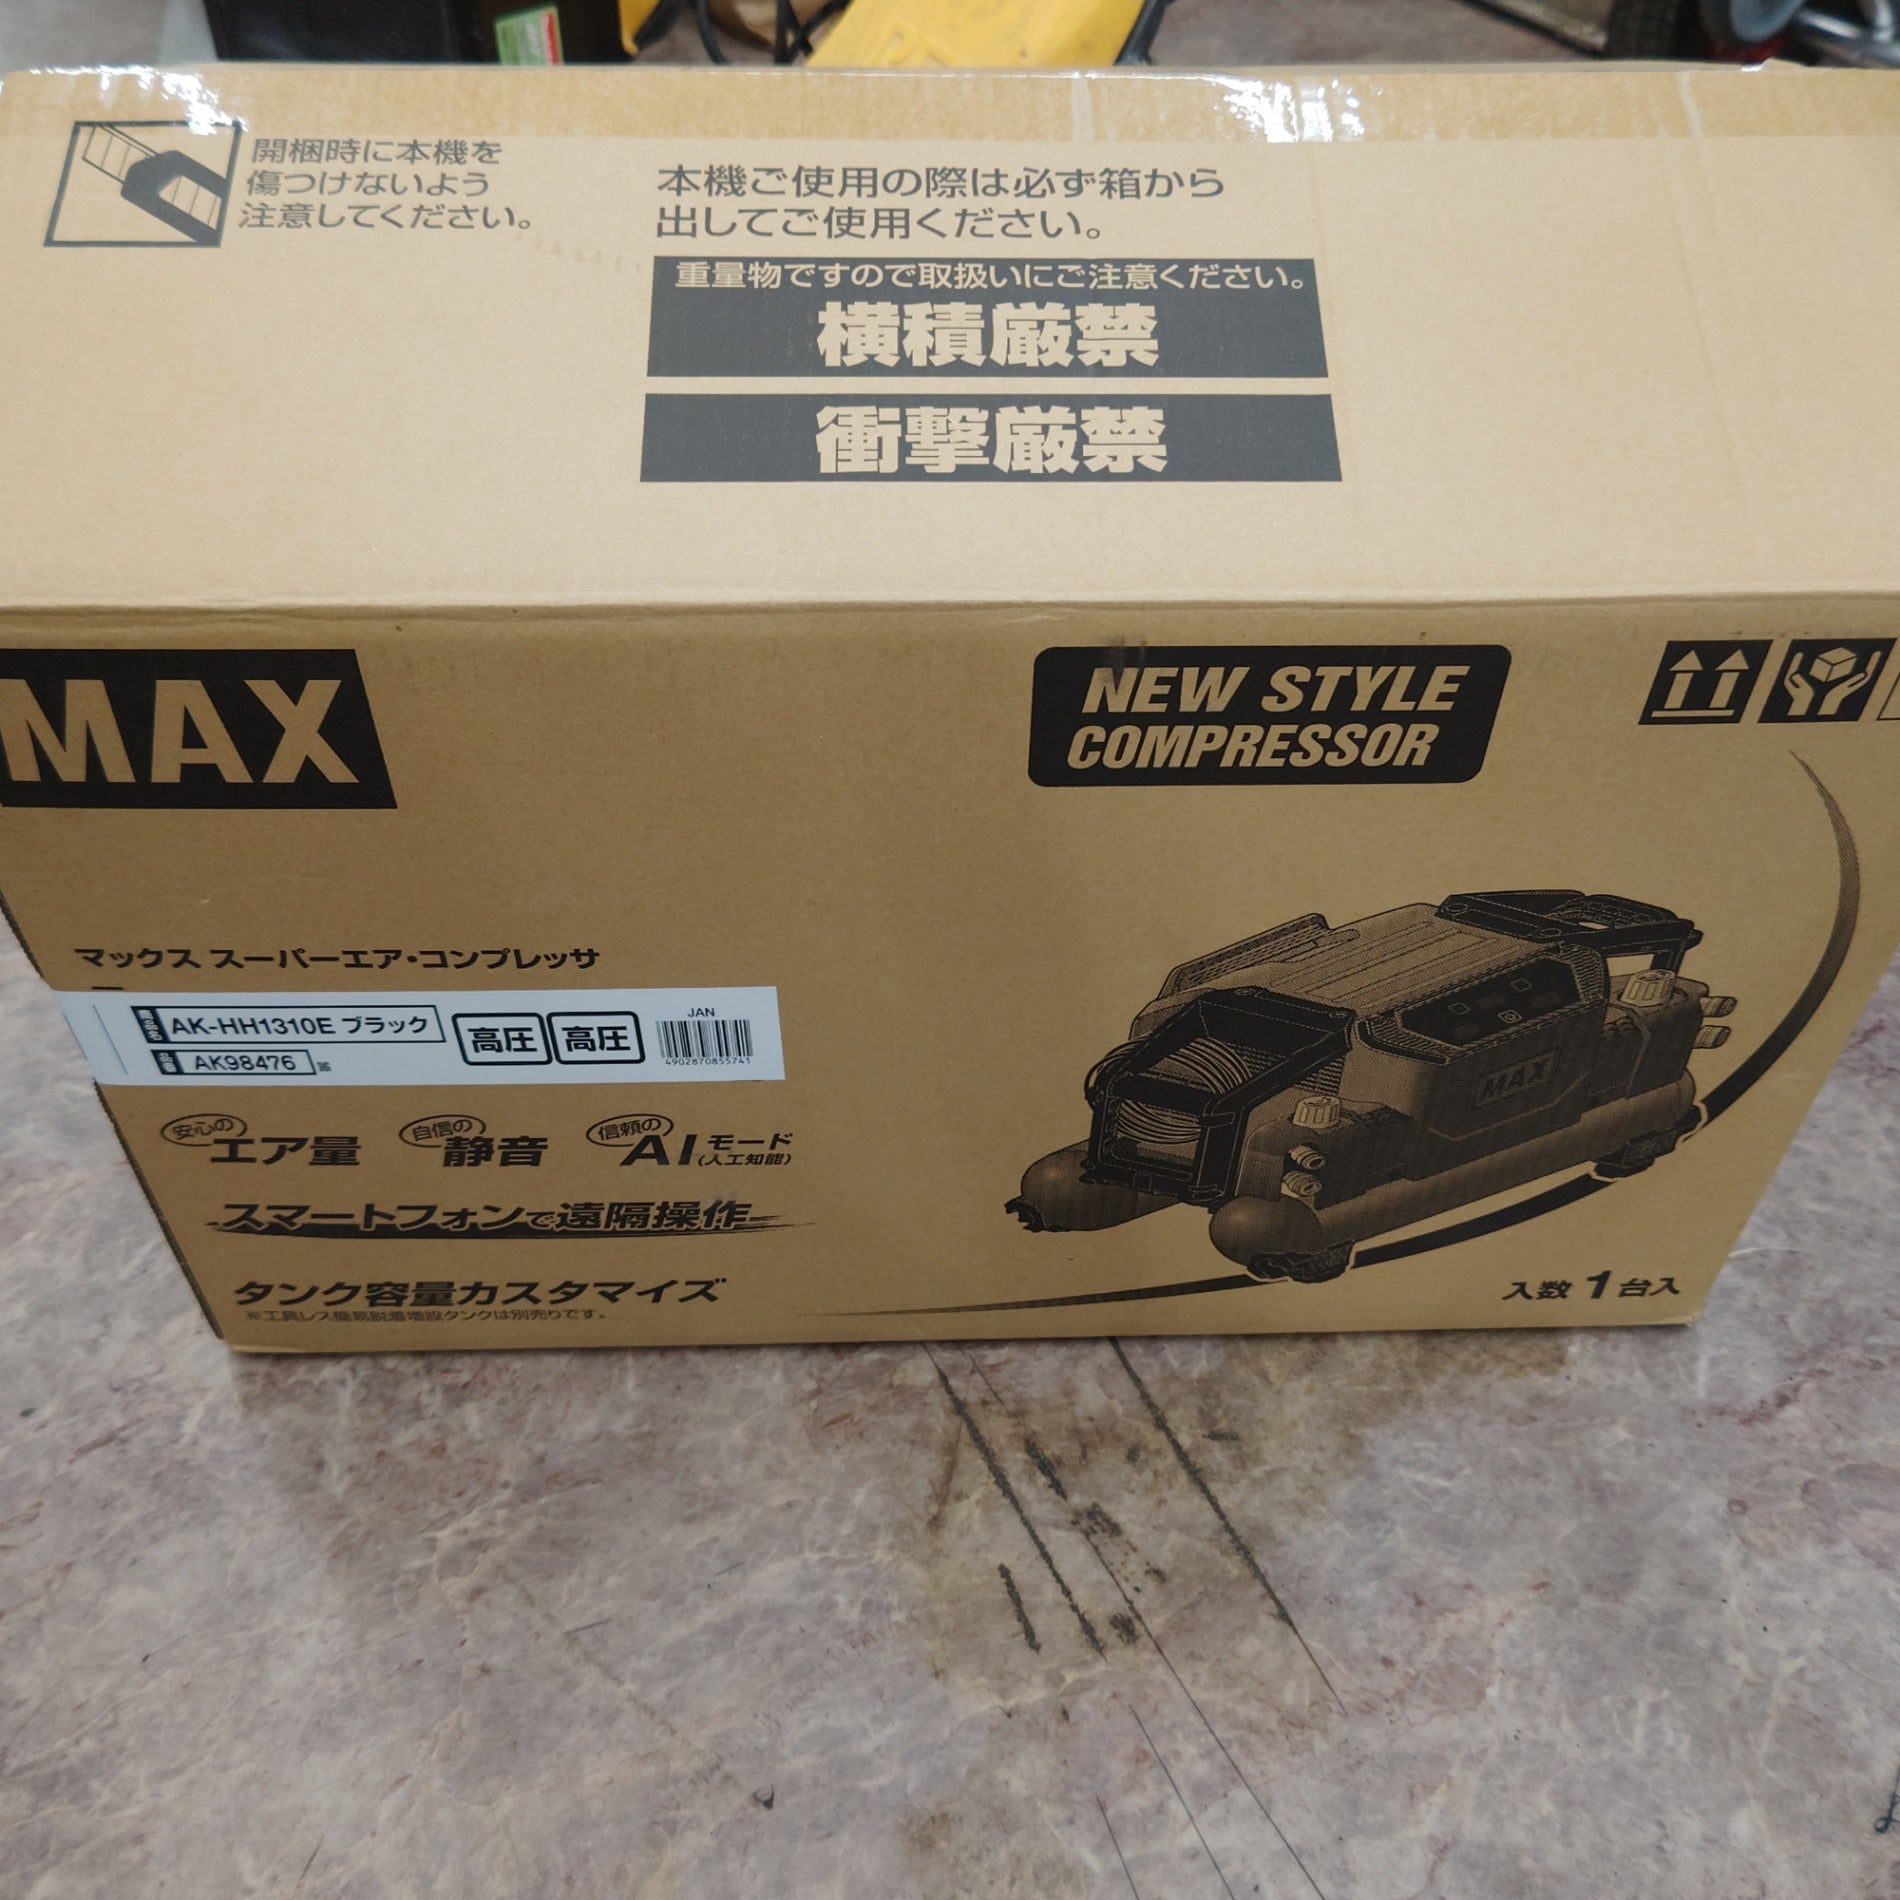 ☆マックス(MAX) エアコンプレッサー AK-HH1310E_ブラック【所沢店 